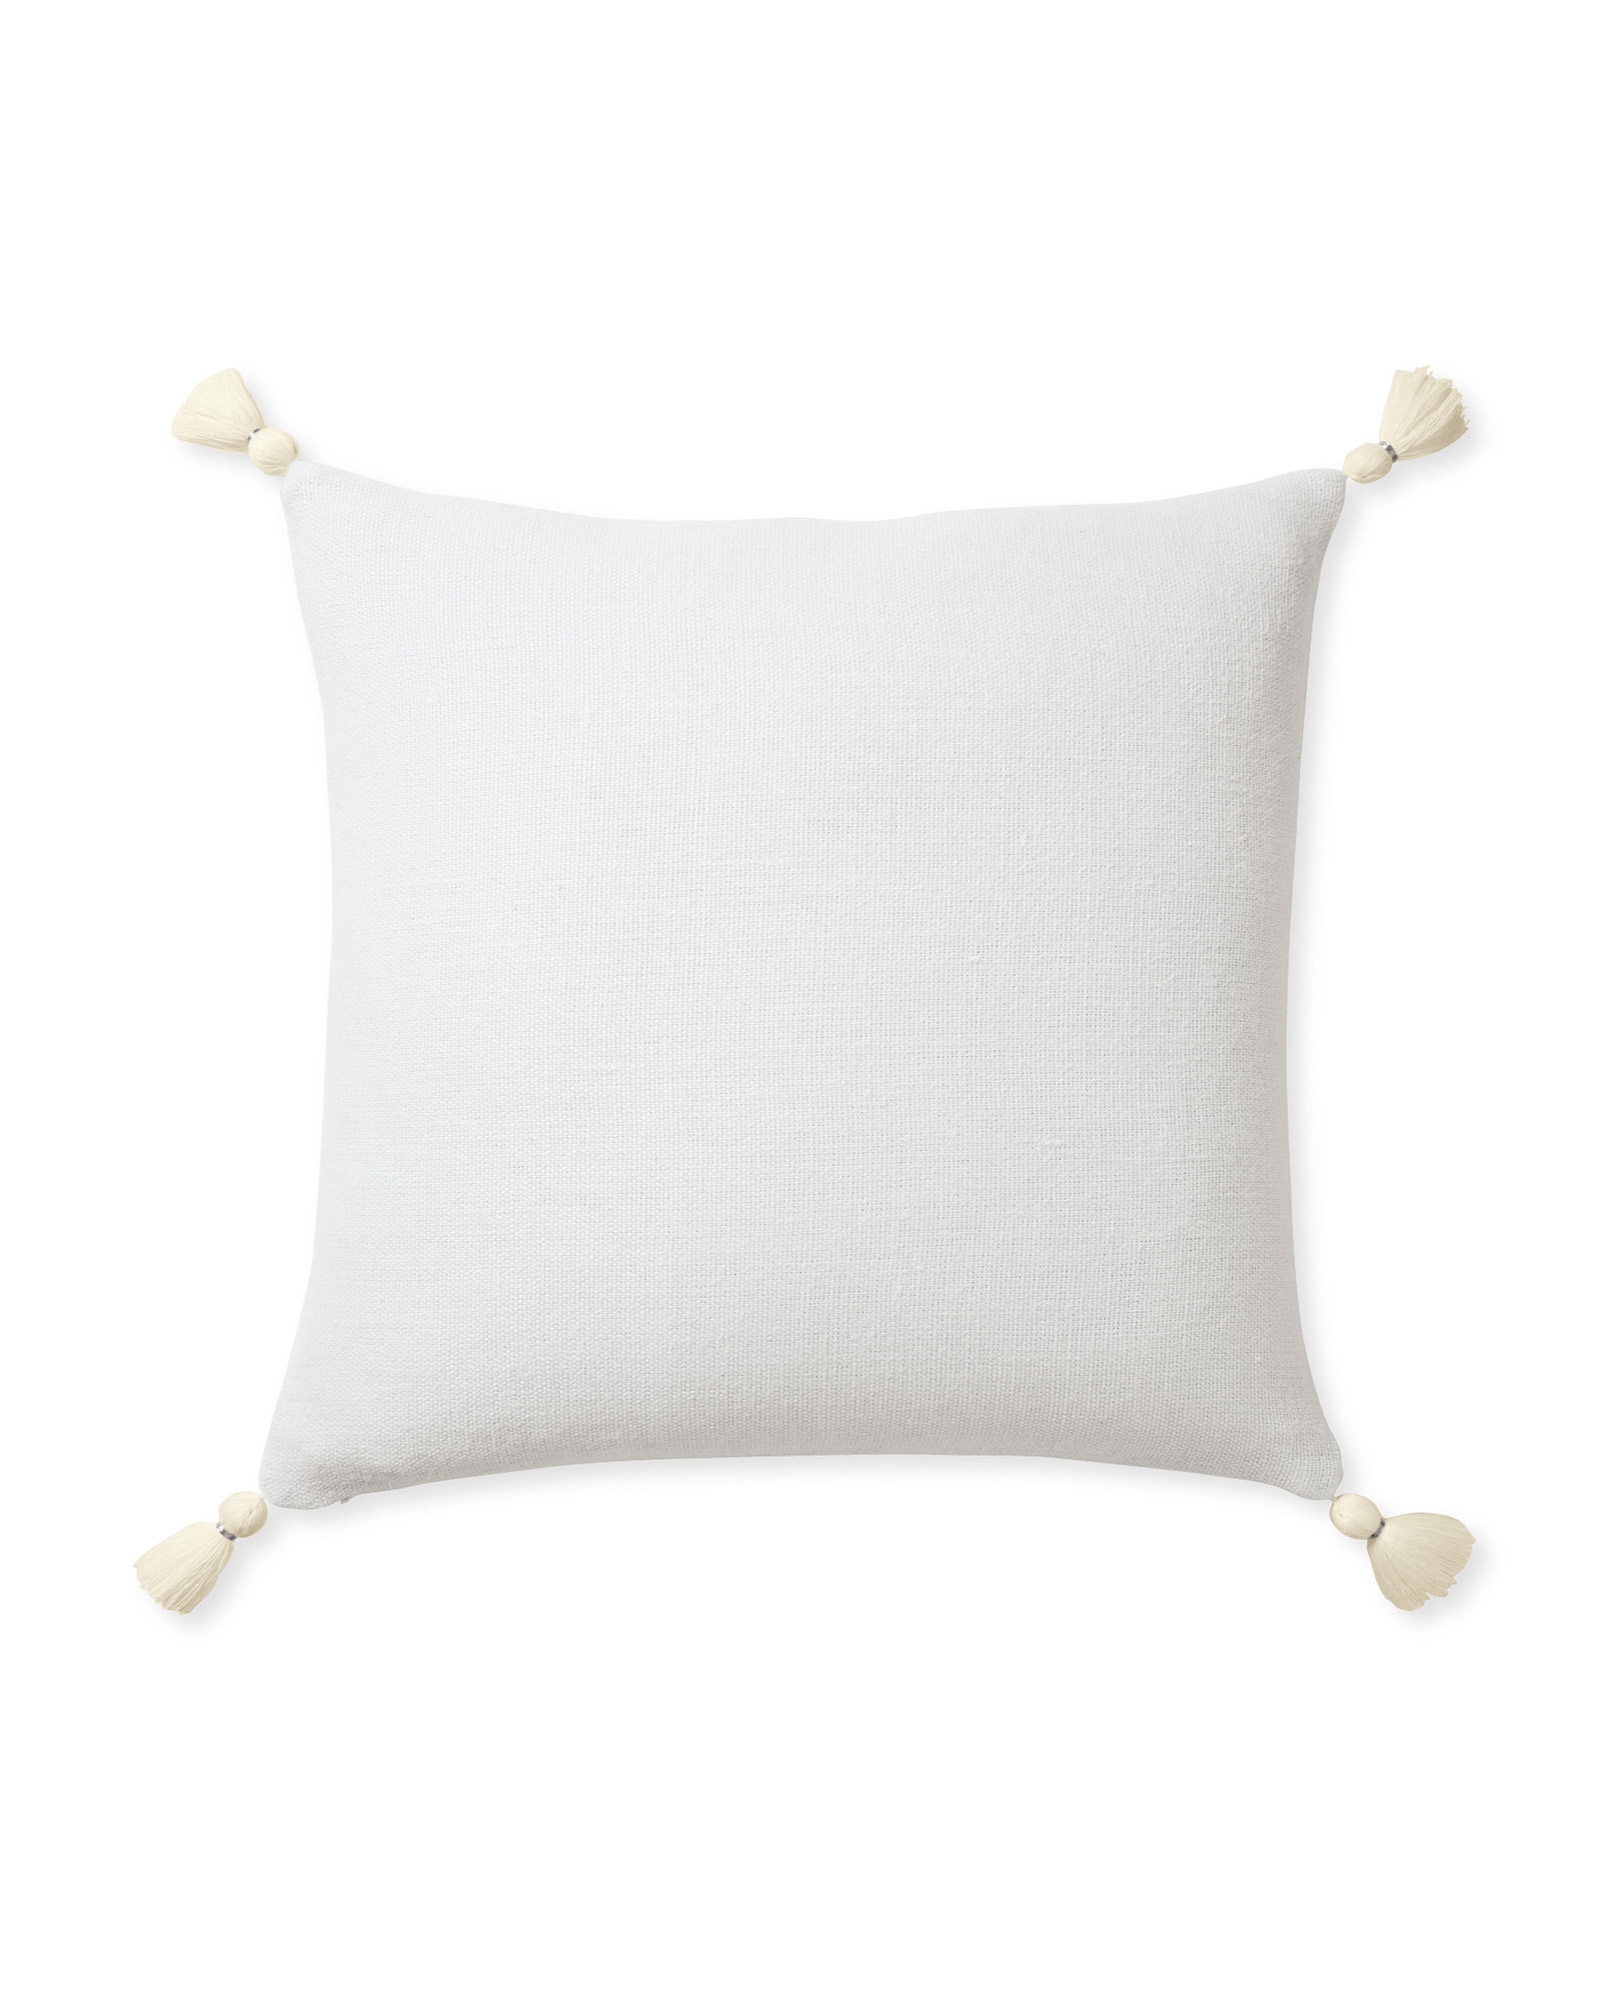 Eva Tassel 20" SQ Pillow Cover - White - Insert sold separately - Image 0